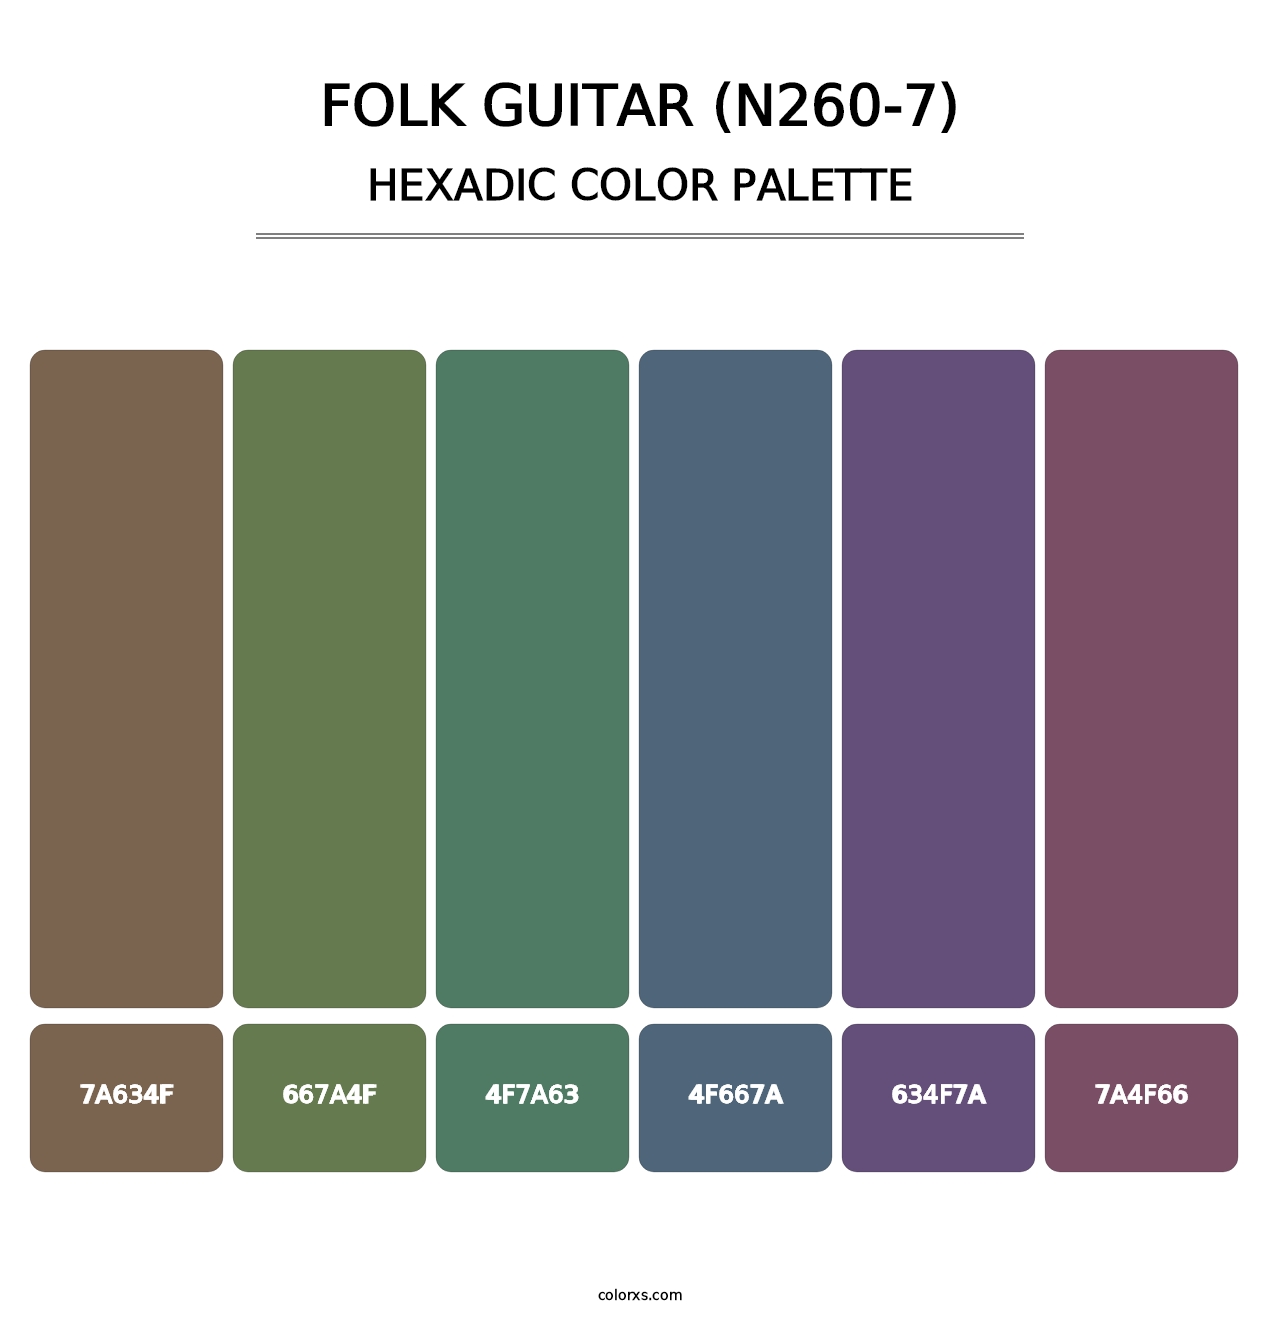 Folk Guitar (N260-7) - Hexadic Color Palette